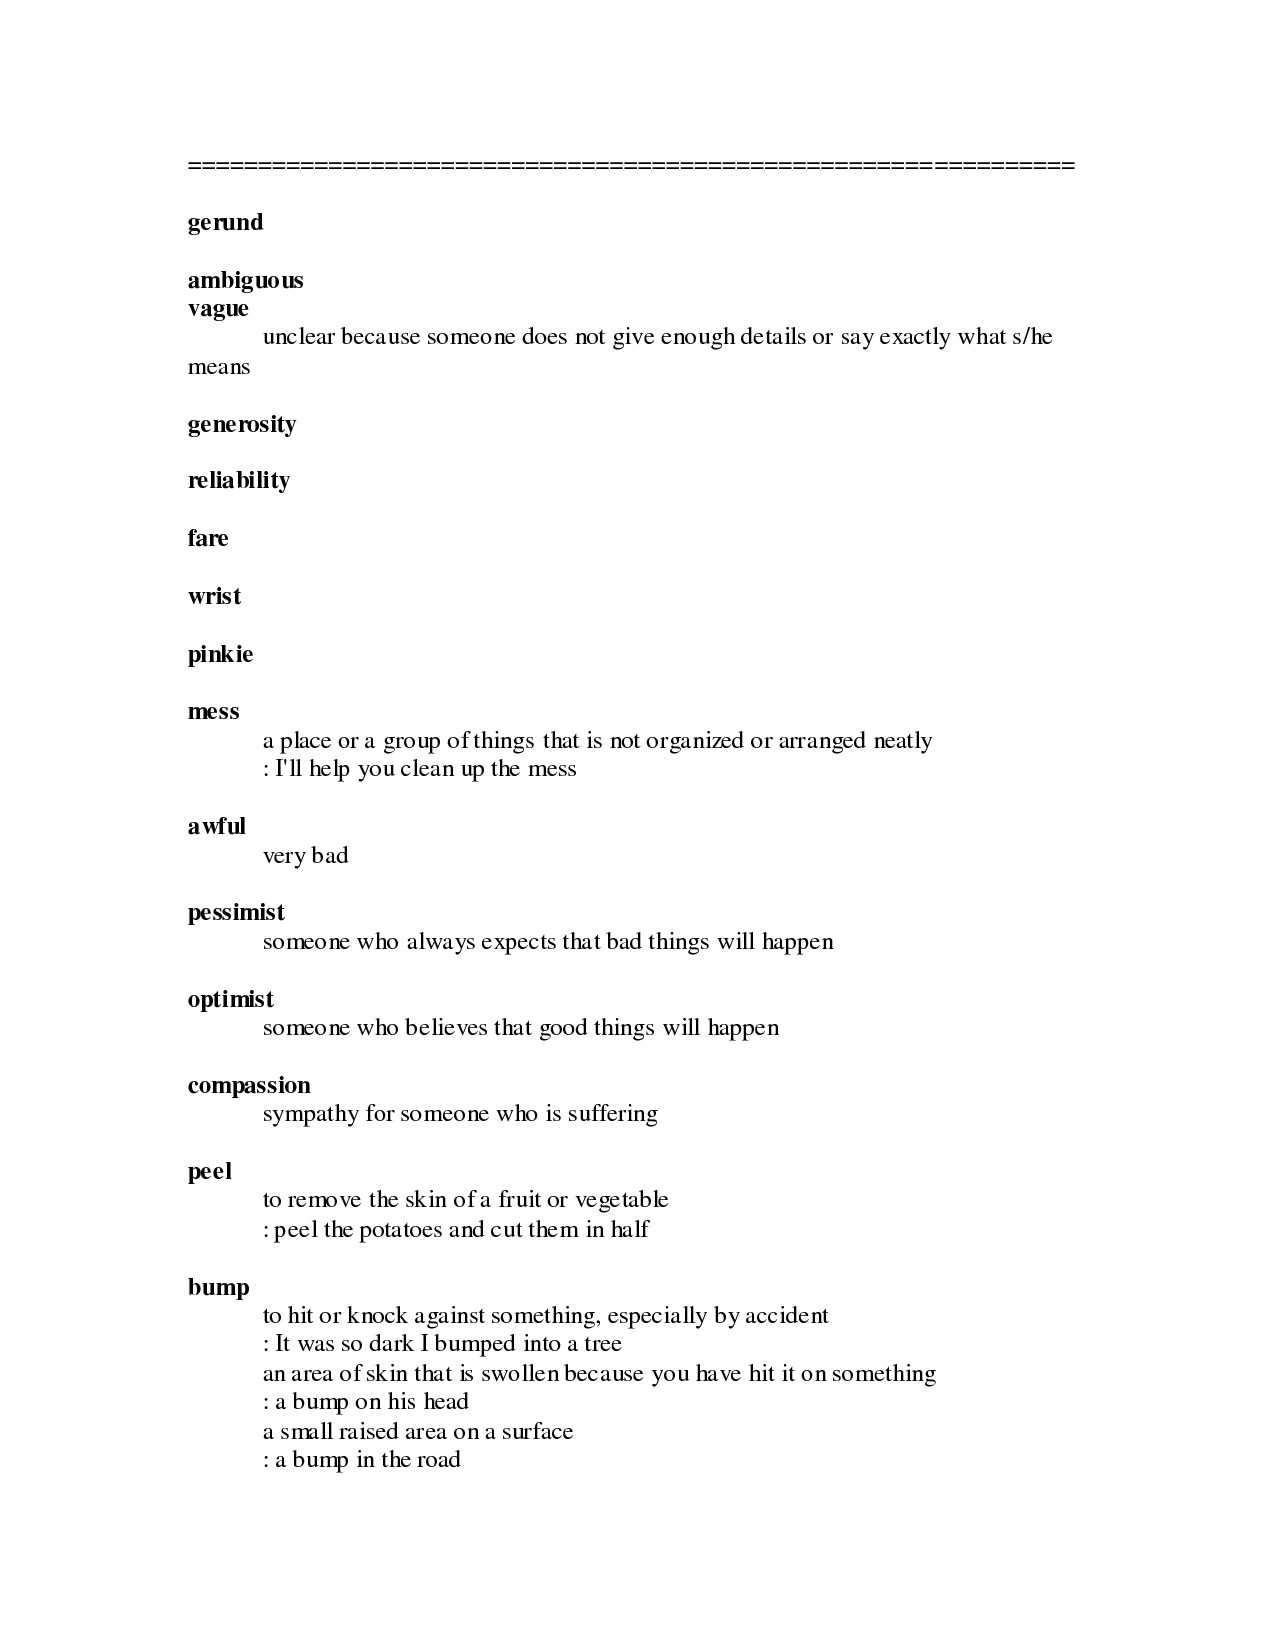 16 Best Images Of Gerund Phrases Worksheets Gerund And Participle Phrase Worksheet Gerund